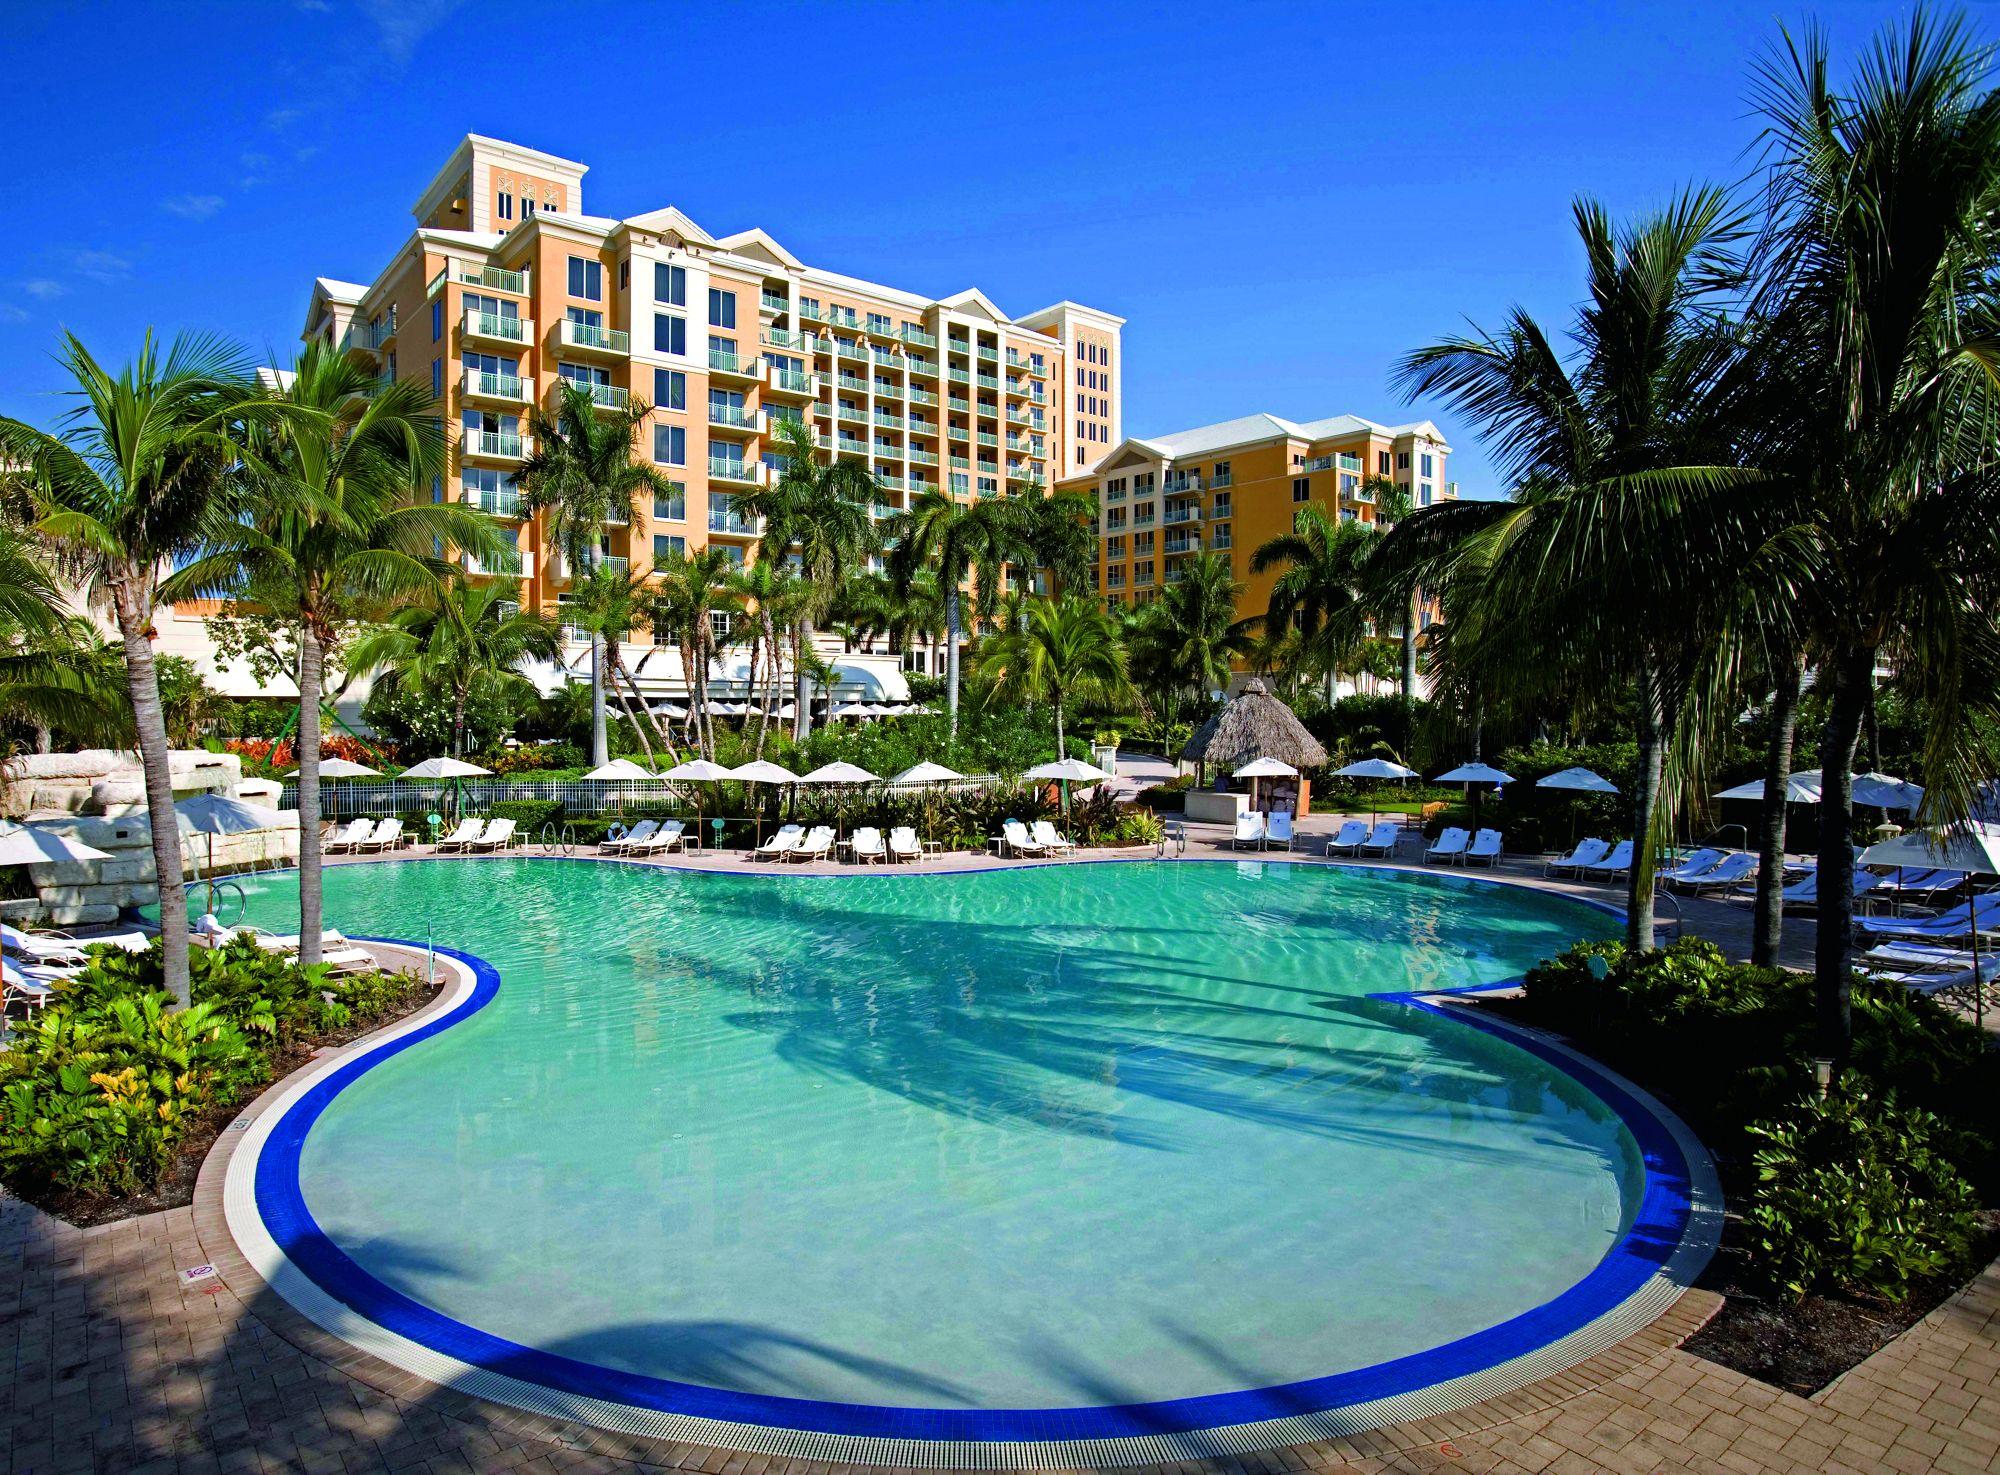 Exterior View The Ritz-Carlton Key Biscayne, Miami